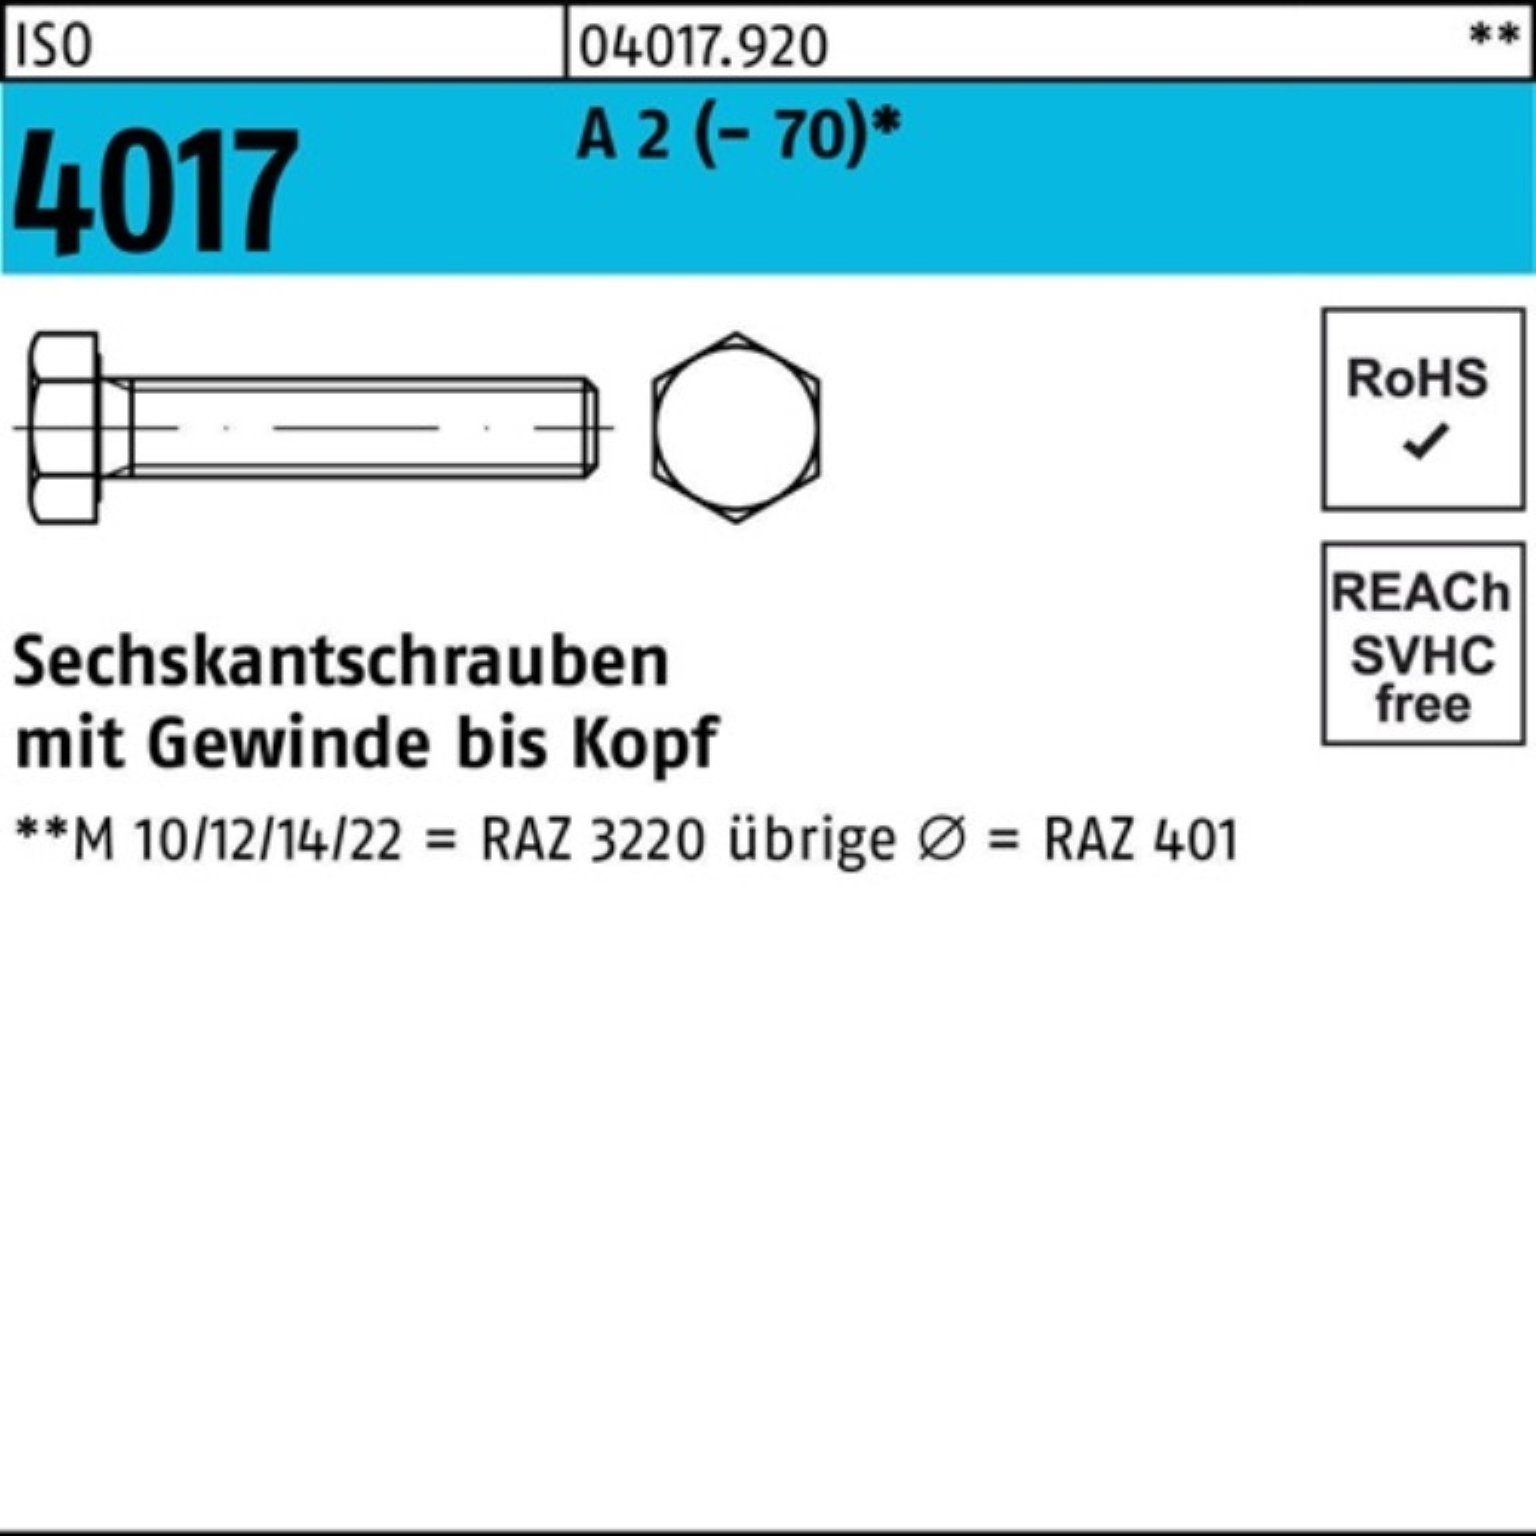 Bufab Sechskantschraube 200er Pack Sechskantschraube ISO 4017 VG M8x 40 A 2 (70) 200 Stück